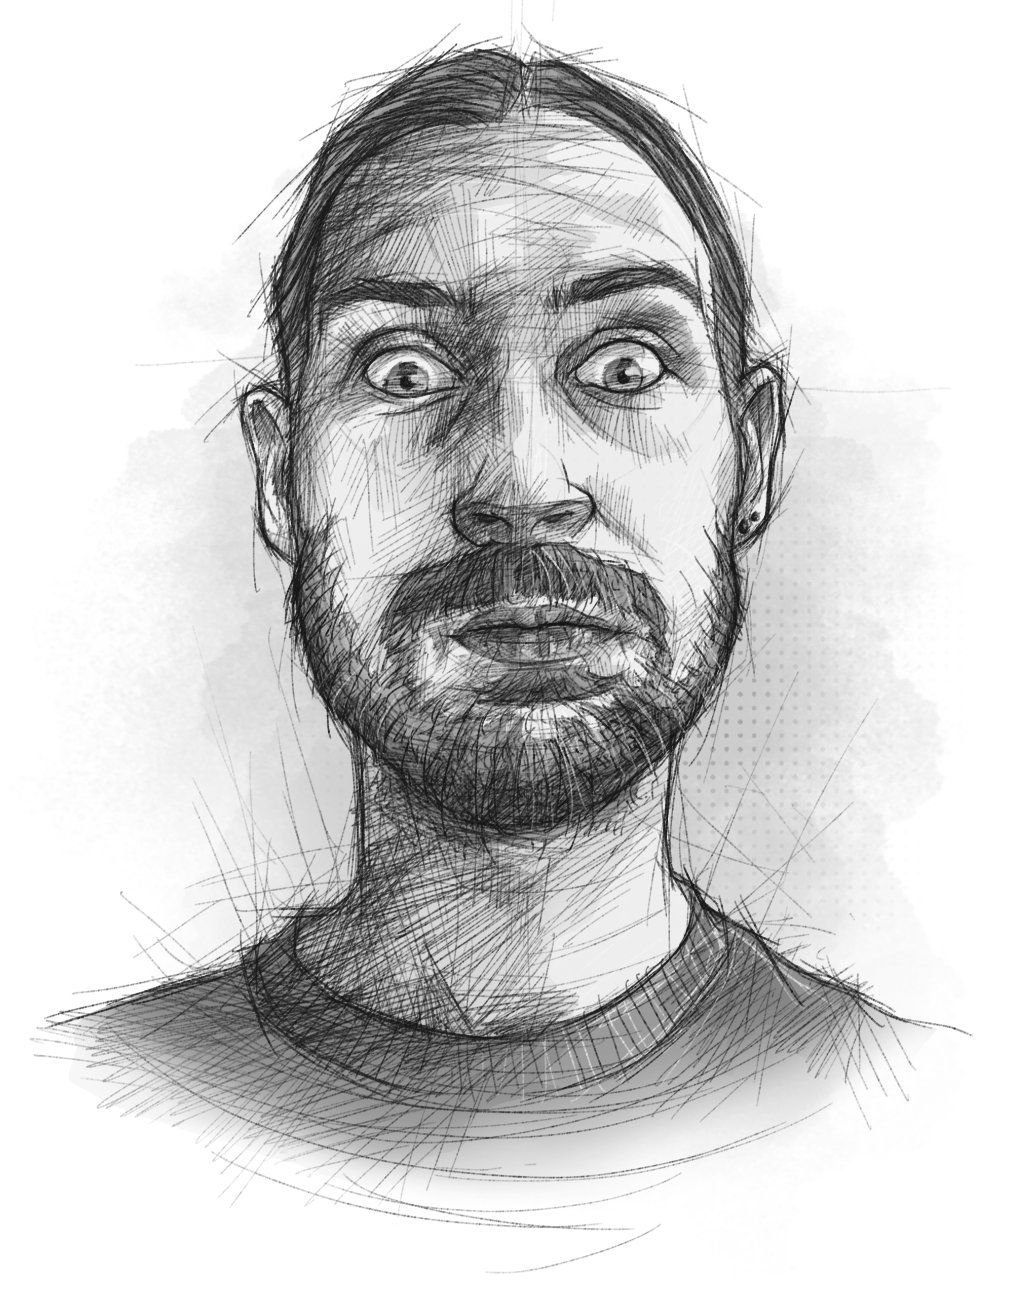 Ein skizzenhaft illustriertes Selbstportrait, das den Illustrator mit Grimasse mit aufgeblasenen Backen und aufgerissenen Augen zeigt